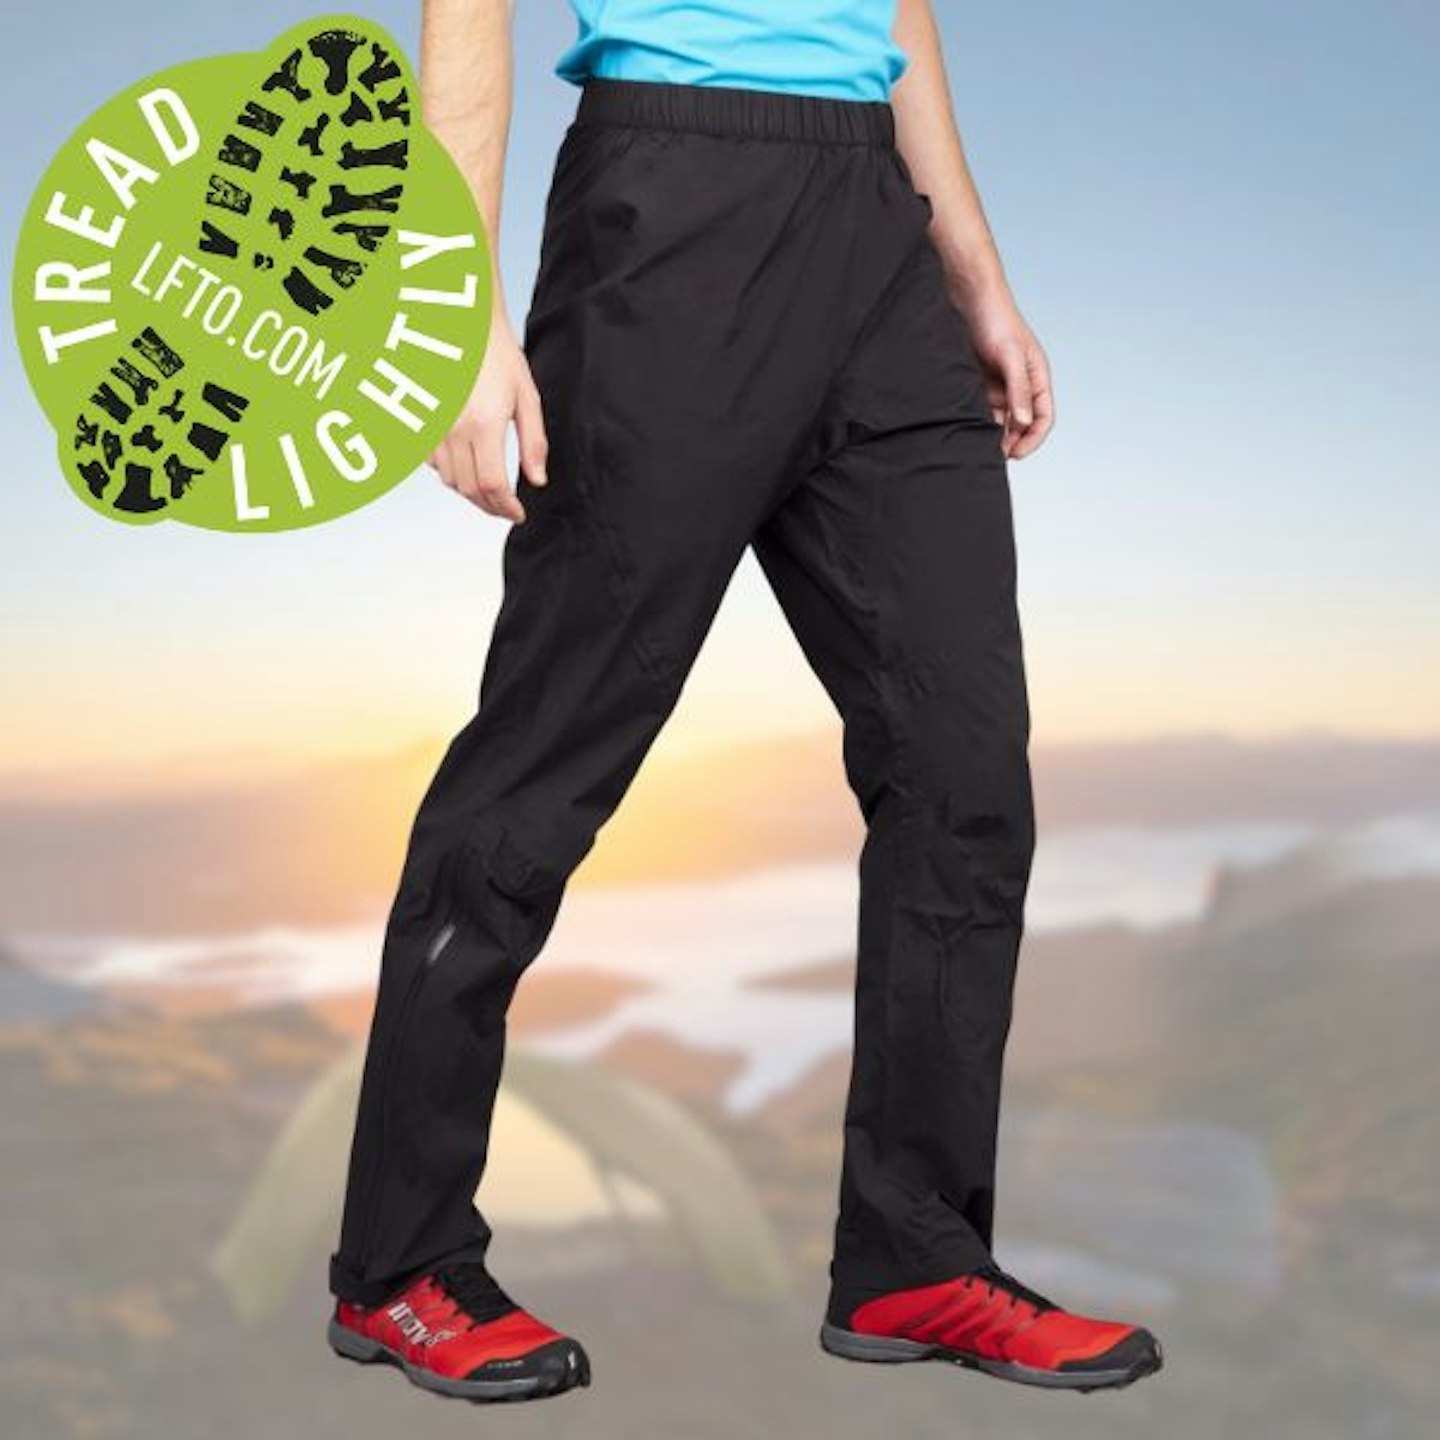 Ladies Waterproof Trousers: Reliable Waterproof Clothing